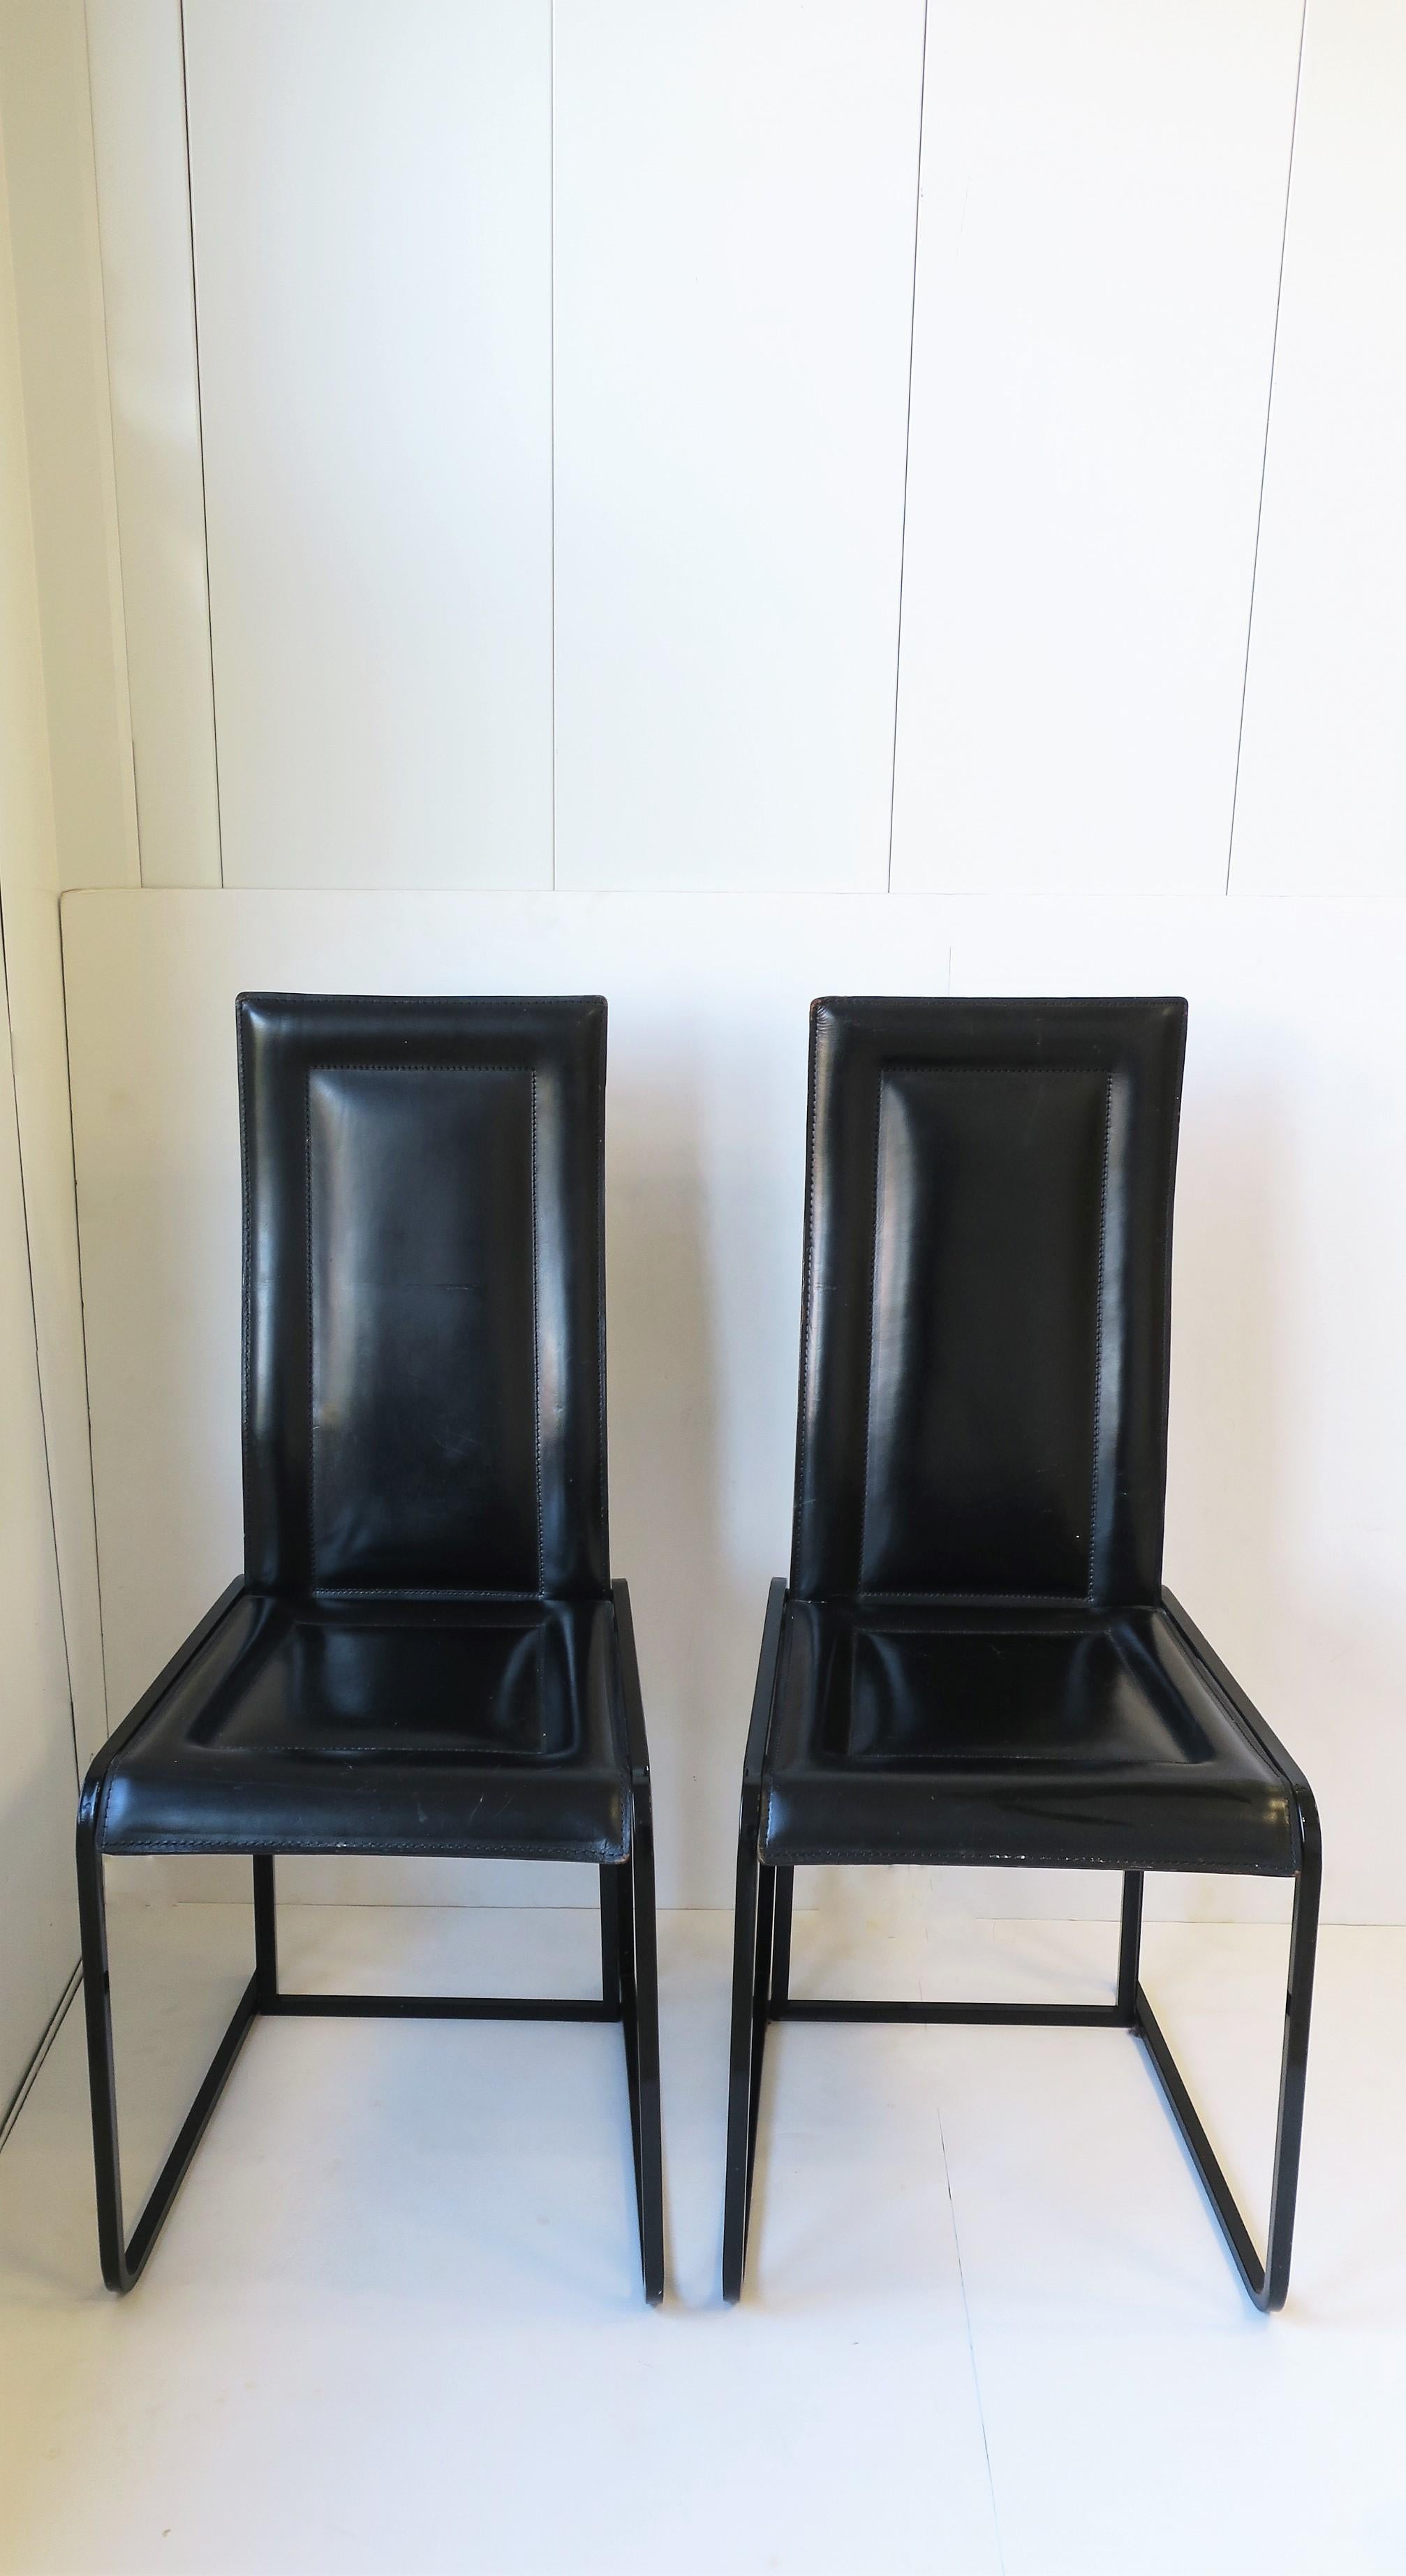 Paire de chaises postmodernes italiennes des années 70 en cuir noir et métal brillant, circa 1970, Italie. Avec étiquette portant la mention 